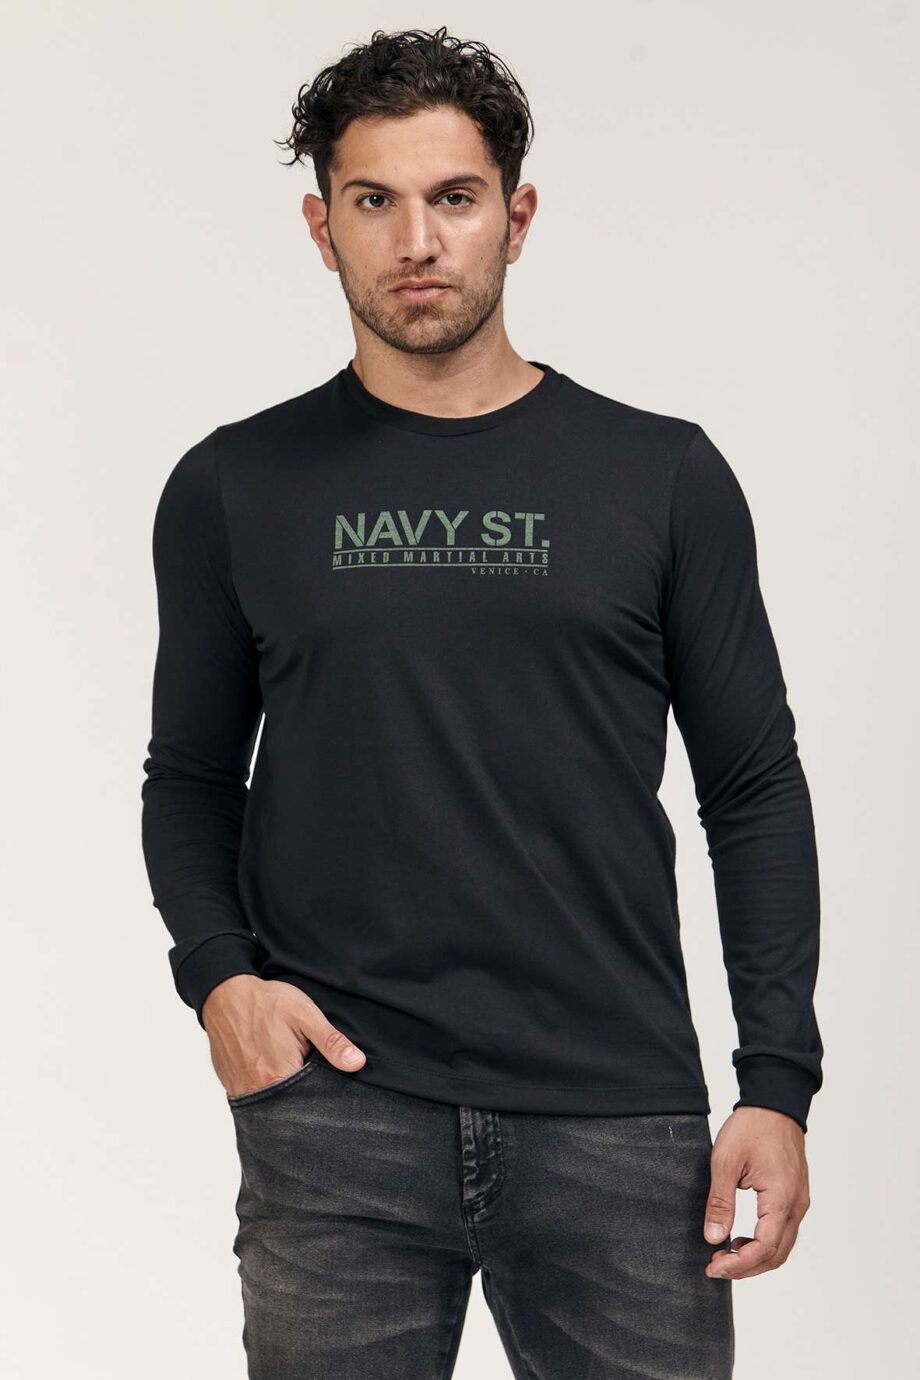 Remera Navy st de jersey